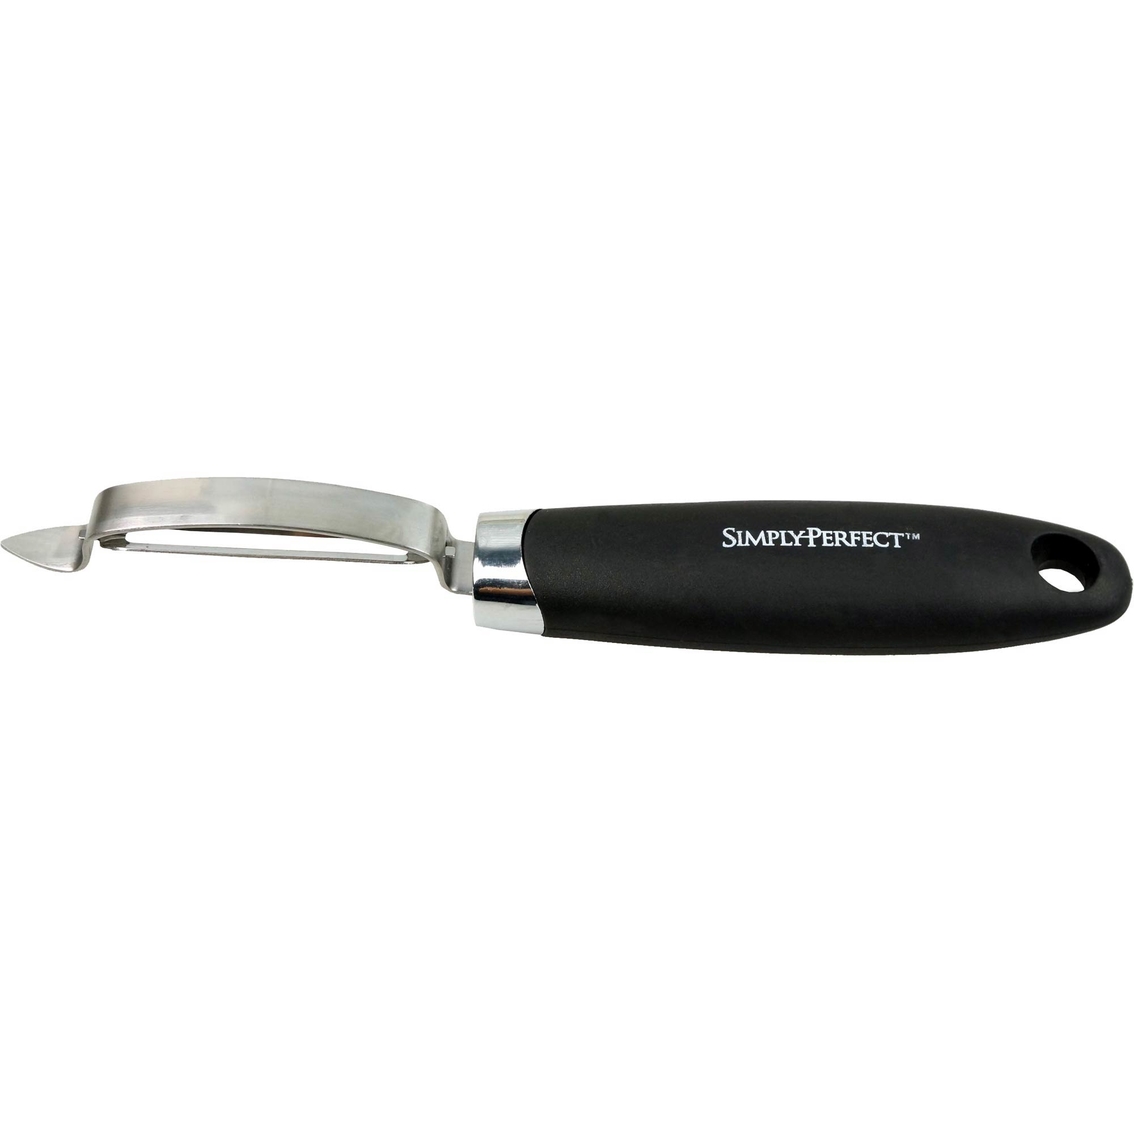 Farberware Professional Swivel Peeler Stainless Steel Blade in Black 